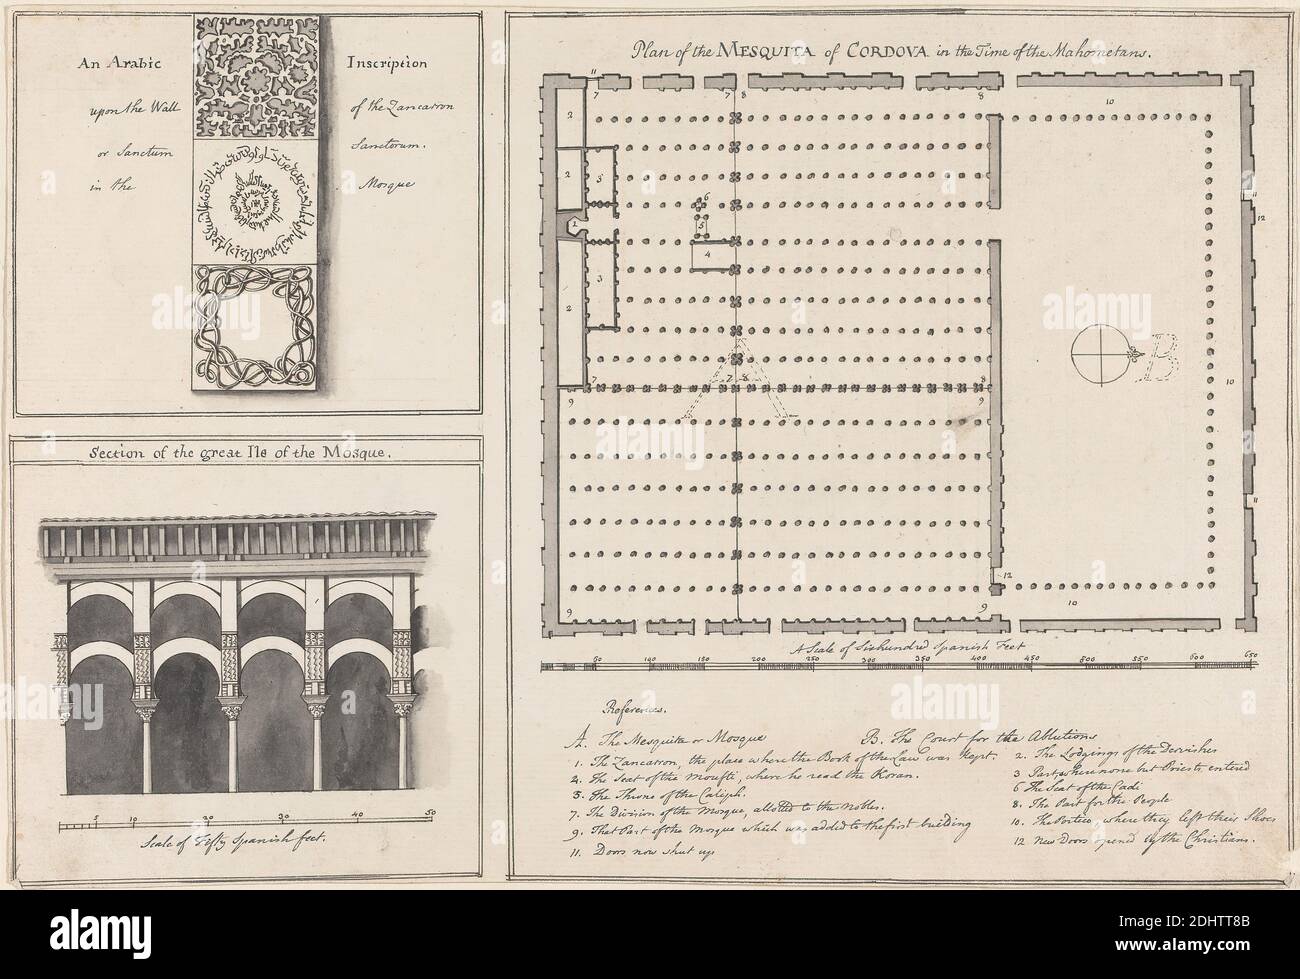 Plan der Mesquita von Cordova, Henry Swinburne, 1743–1803, britisch, 1775 bis 1776, Feder und schwarze Tinte, graue Tinte, schwarze Wäsche, graue Wäsche und Graphit auf Medium, mäßig strukturiert, creme, getuschenes Papier, montiert auf mäßig dick, mäßig strukturiert, creme, gewebt Papier, Halterung: 11 1/8 × 16 7/16 Zoll (28.3 × 41.8 cm) und Blatt: 8 3/8 × 12 3/16 Zoll (21.3 × 31 cm Stockfoto